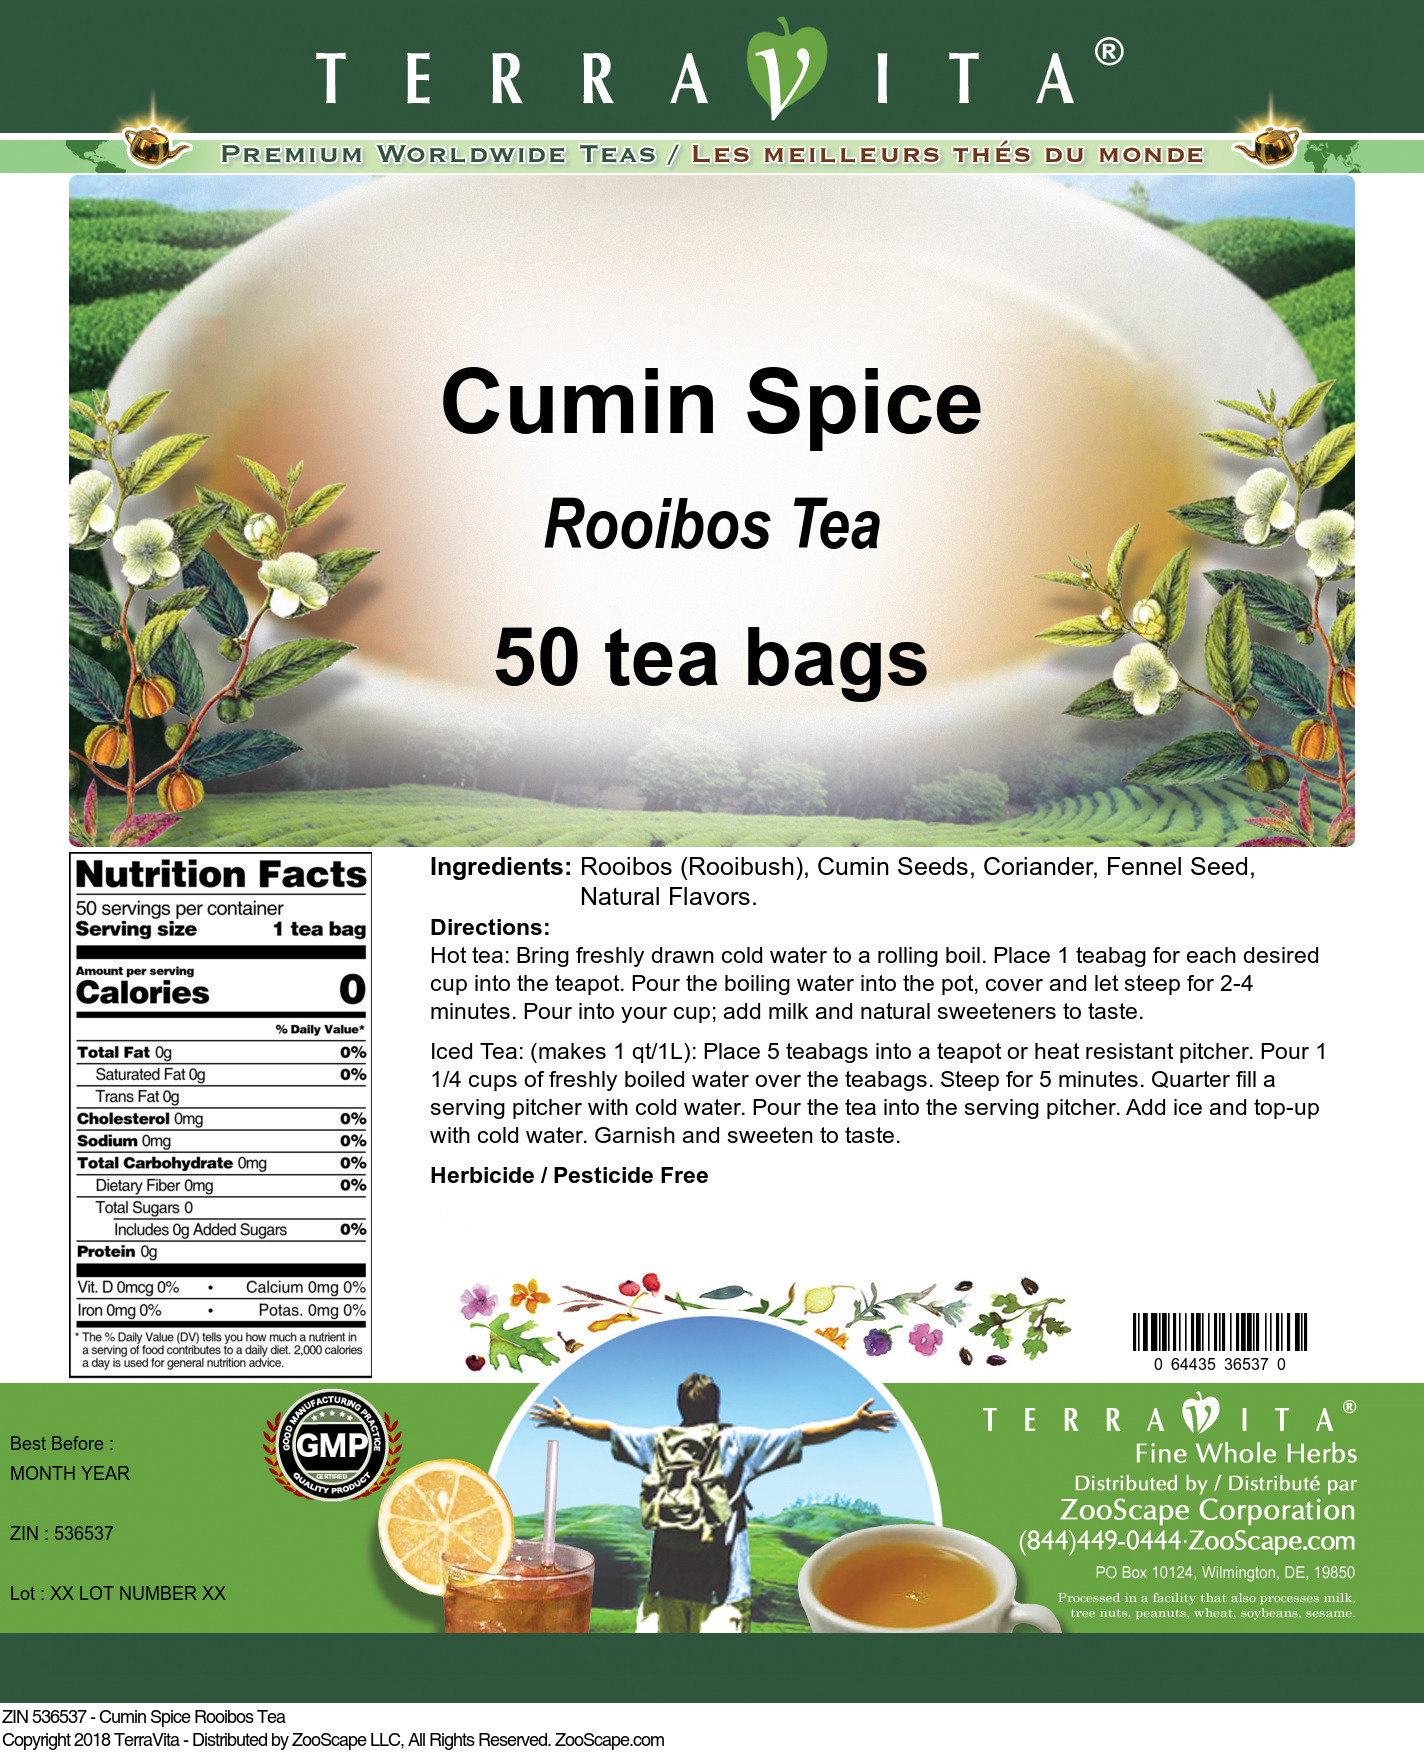 Cumin Spice Rooibos Tea - Label